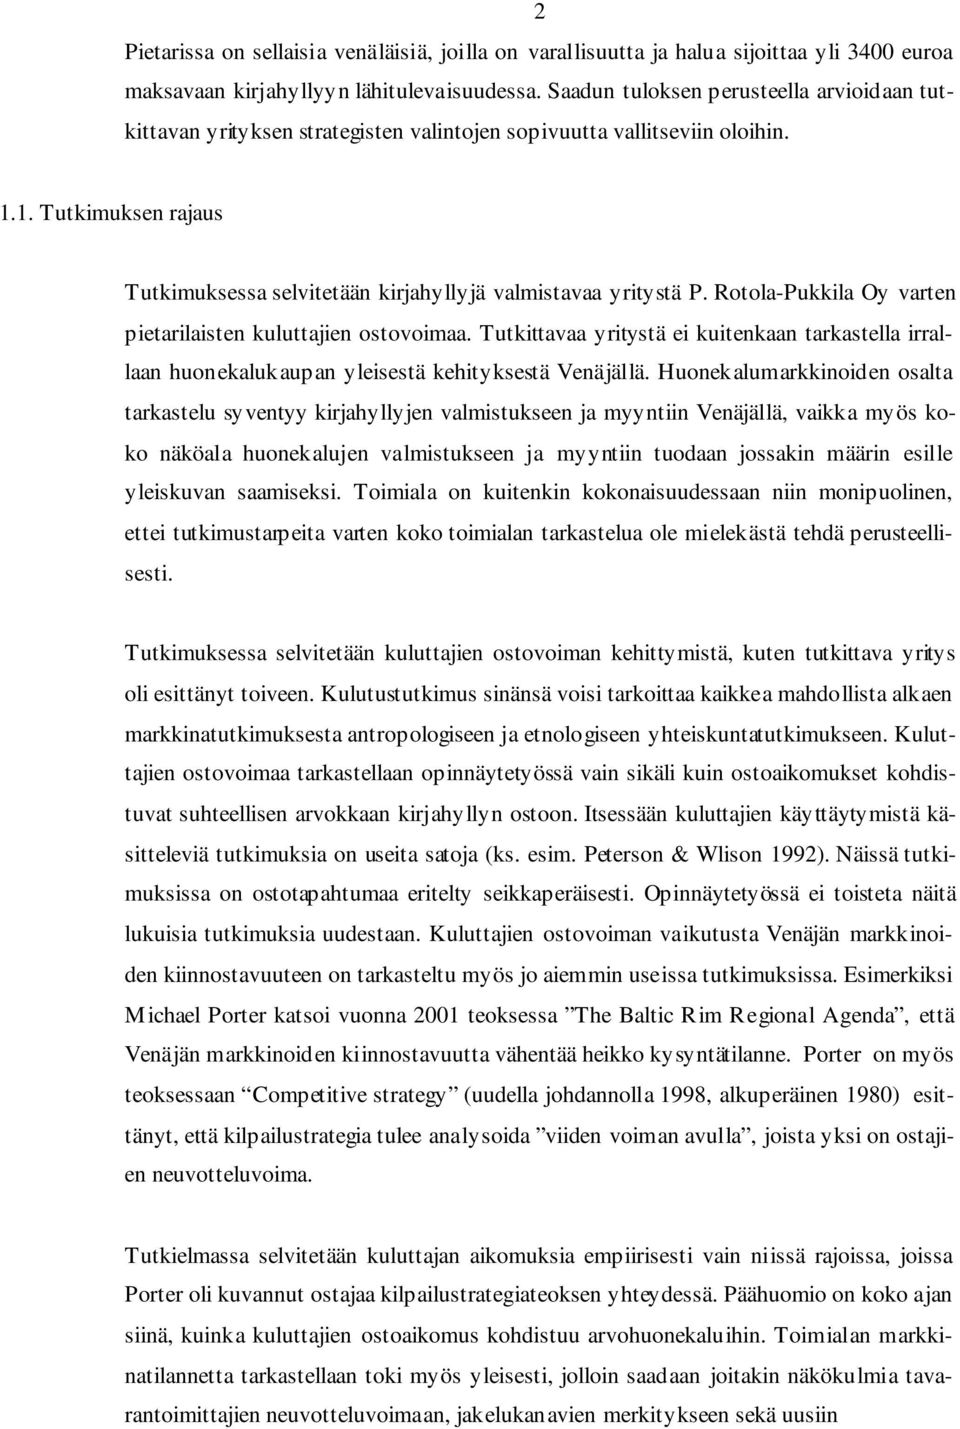 1. Tutkimuksen rajaus Tutkimuksessa selvitetään kirjahyllyjä valmistavaa yritystä P. Rotola-Pukkila Oy varten pietarilaisten kuluttajien ostovoimaa.